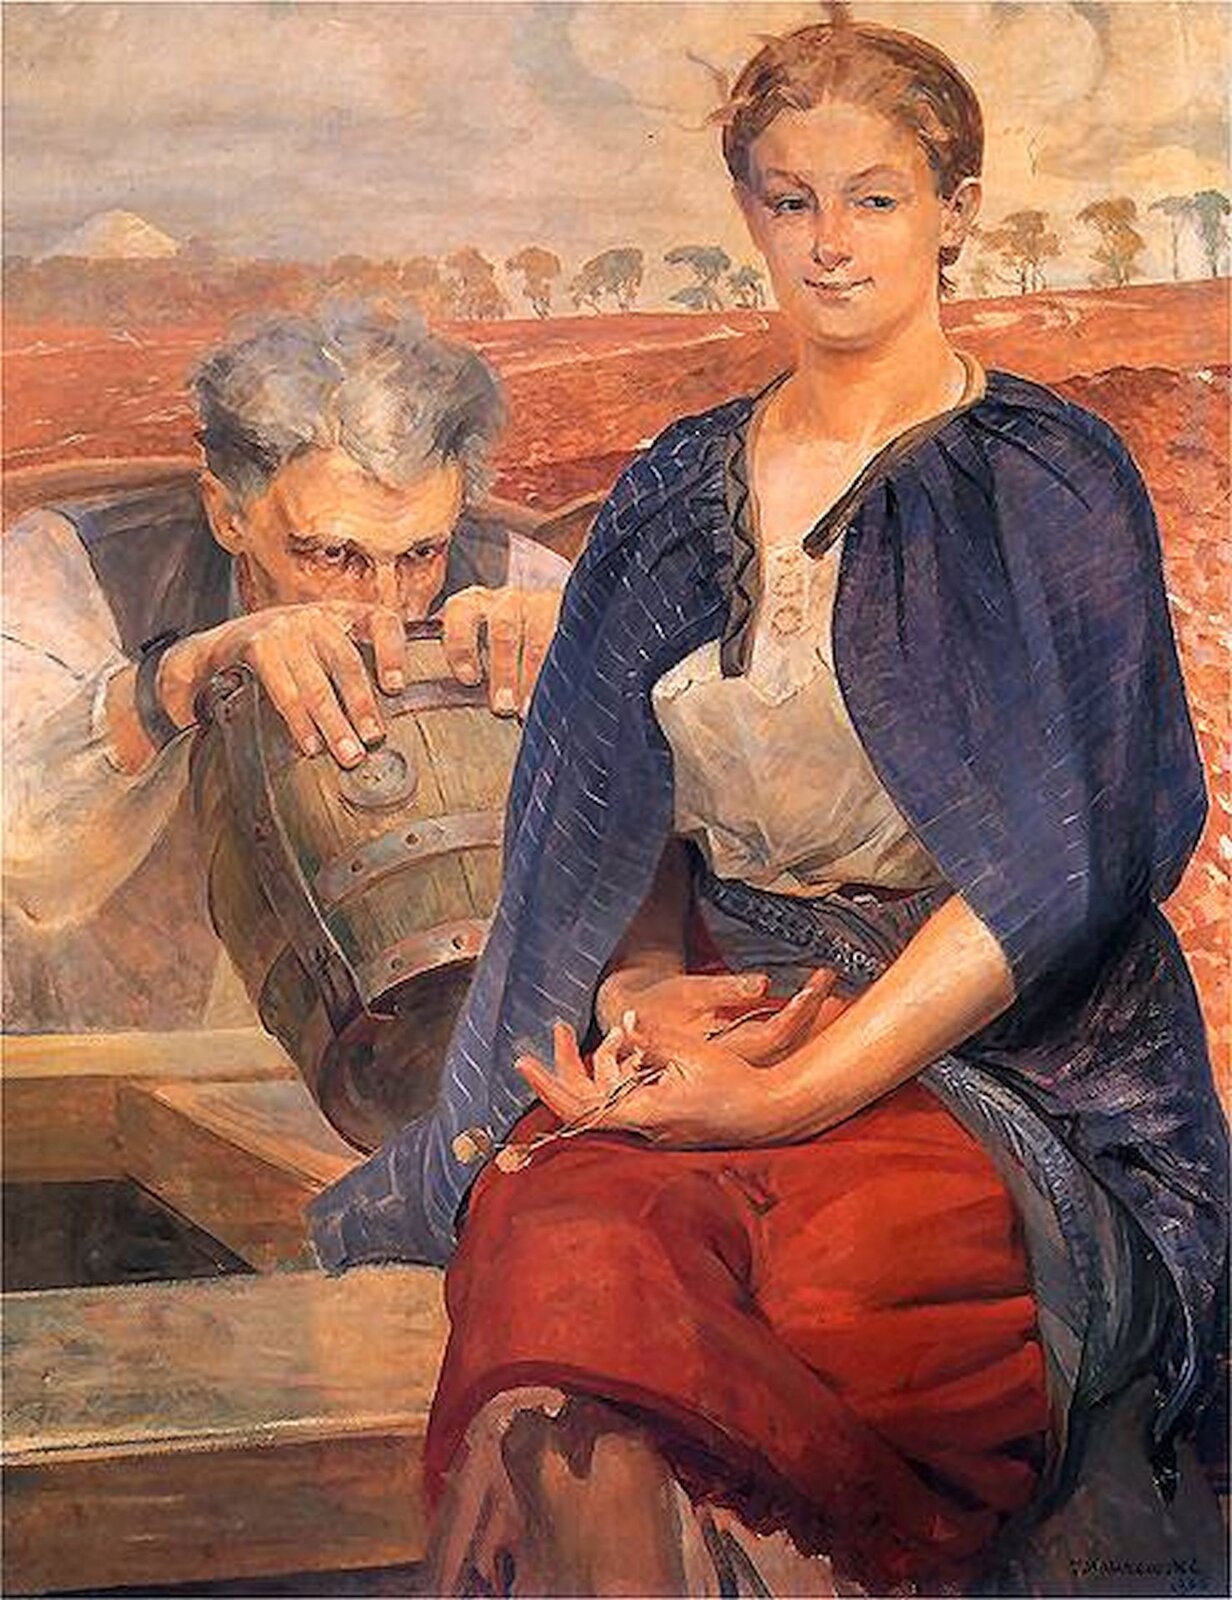 Ilustracja o kształcie pionowego prostokąta przedstawia obraz Jacka Malczewskiego "Zatruta studnia". Ukazuje dwie postacie – mężczyznę i kobietę. Mężczyzna o siwych włosach zagląda do stojącej na studni beczki. Na jego nadgarstku widoczne są kajdany. Na rogu studni siedzi kobieta ubrana w białą bluzkę i czerwoną spódnicę. Ma na sobie narzuconą niebieską pelerynę w prążki. Jest skierowana centralnie w stronę widza. Za nimi rozciąga się daleki pejzaż pól. Na horyzoncie rośnie rząd liściastych, jesiennych drzew. 